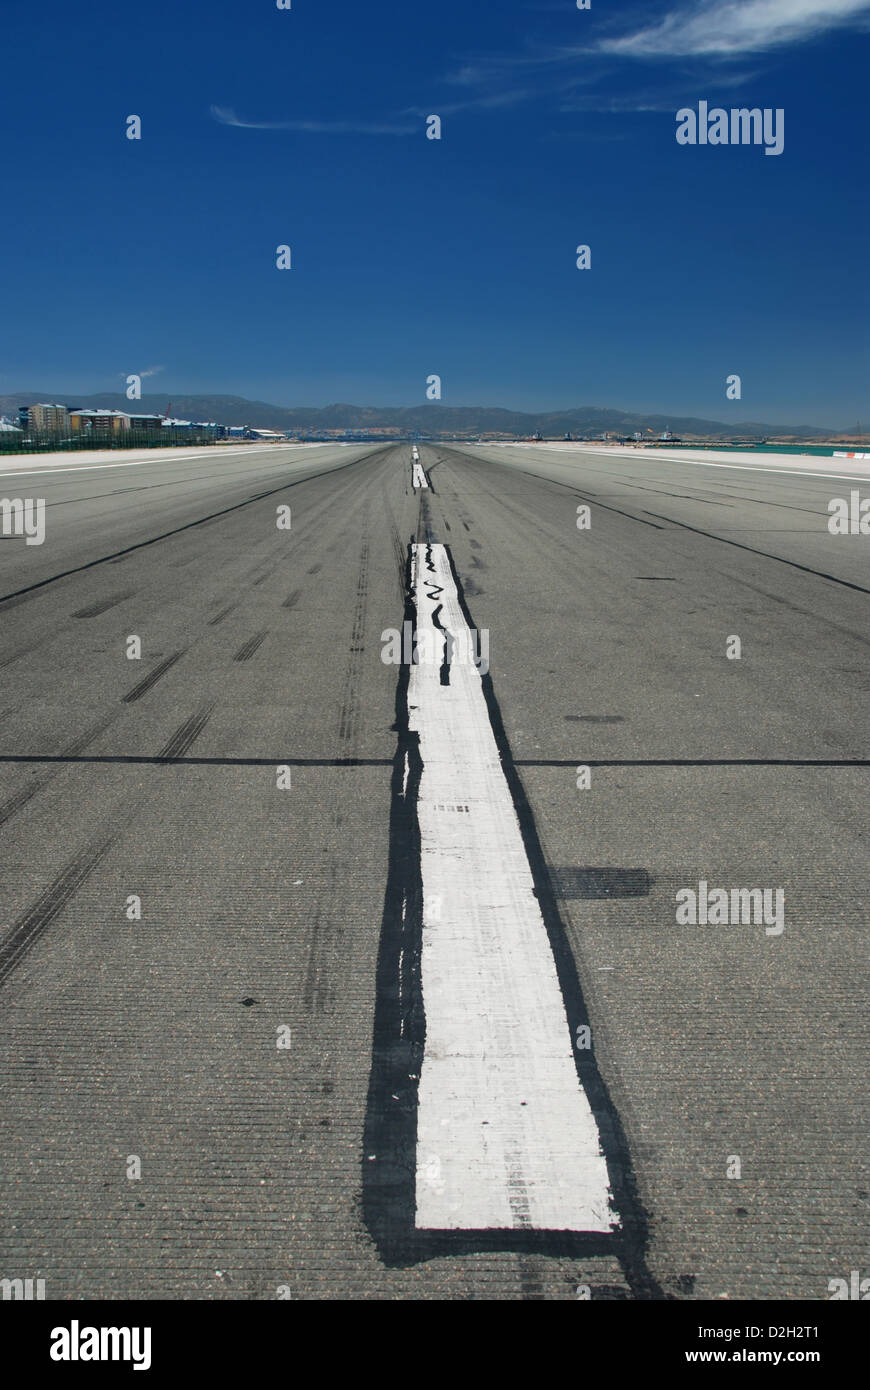 Grande bande blanche au milieu d'une piste dans un aéroport Banque D'Images